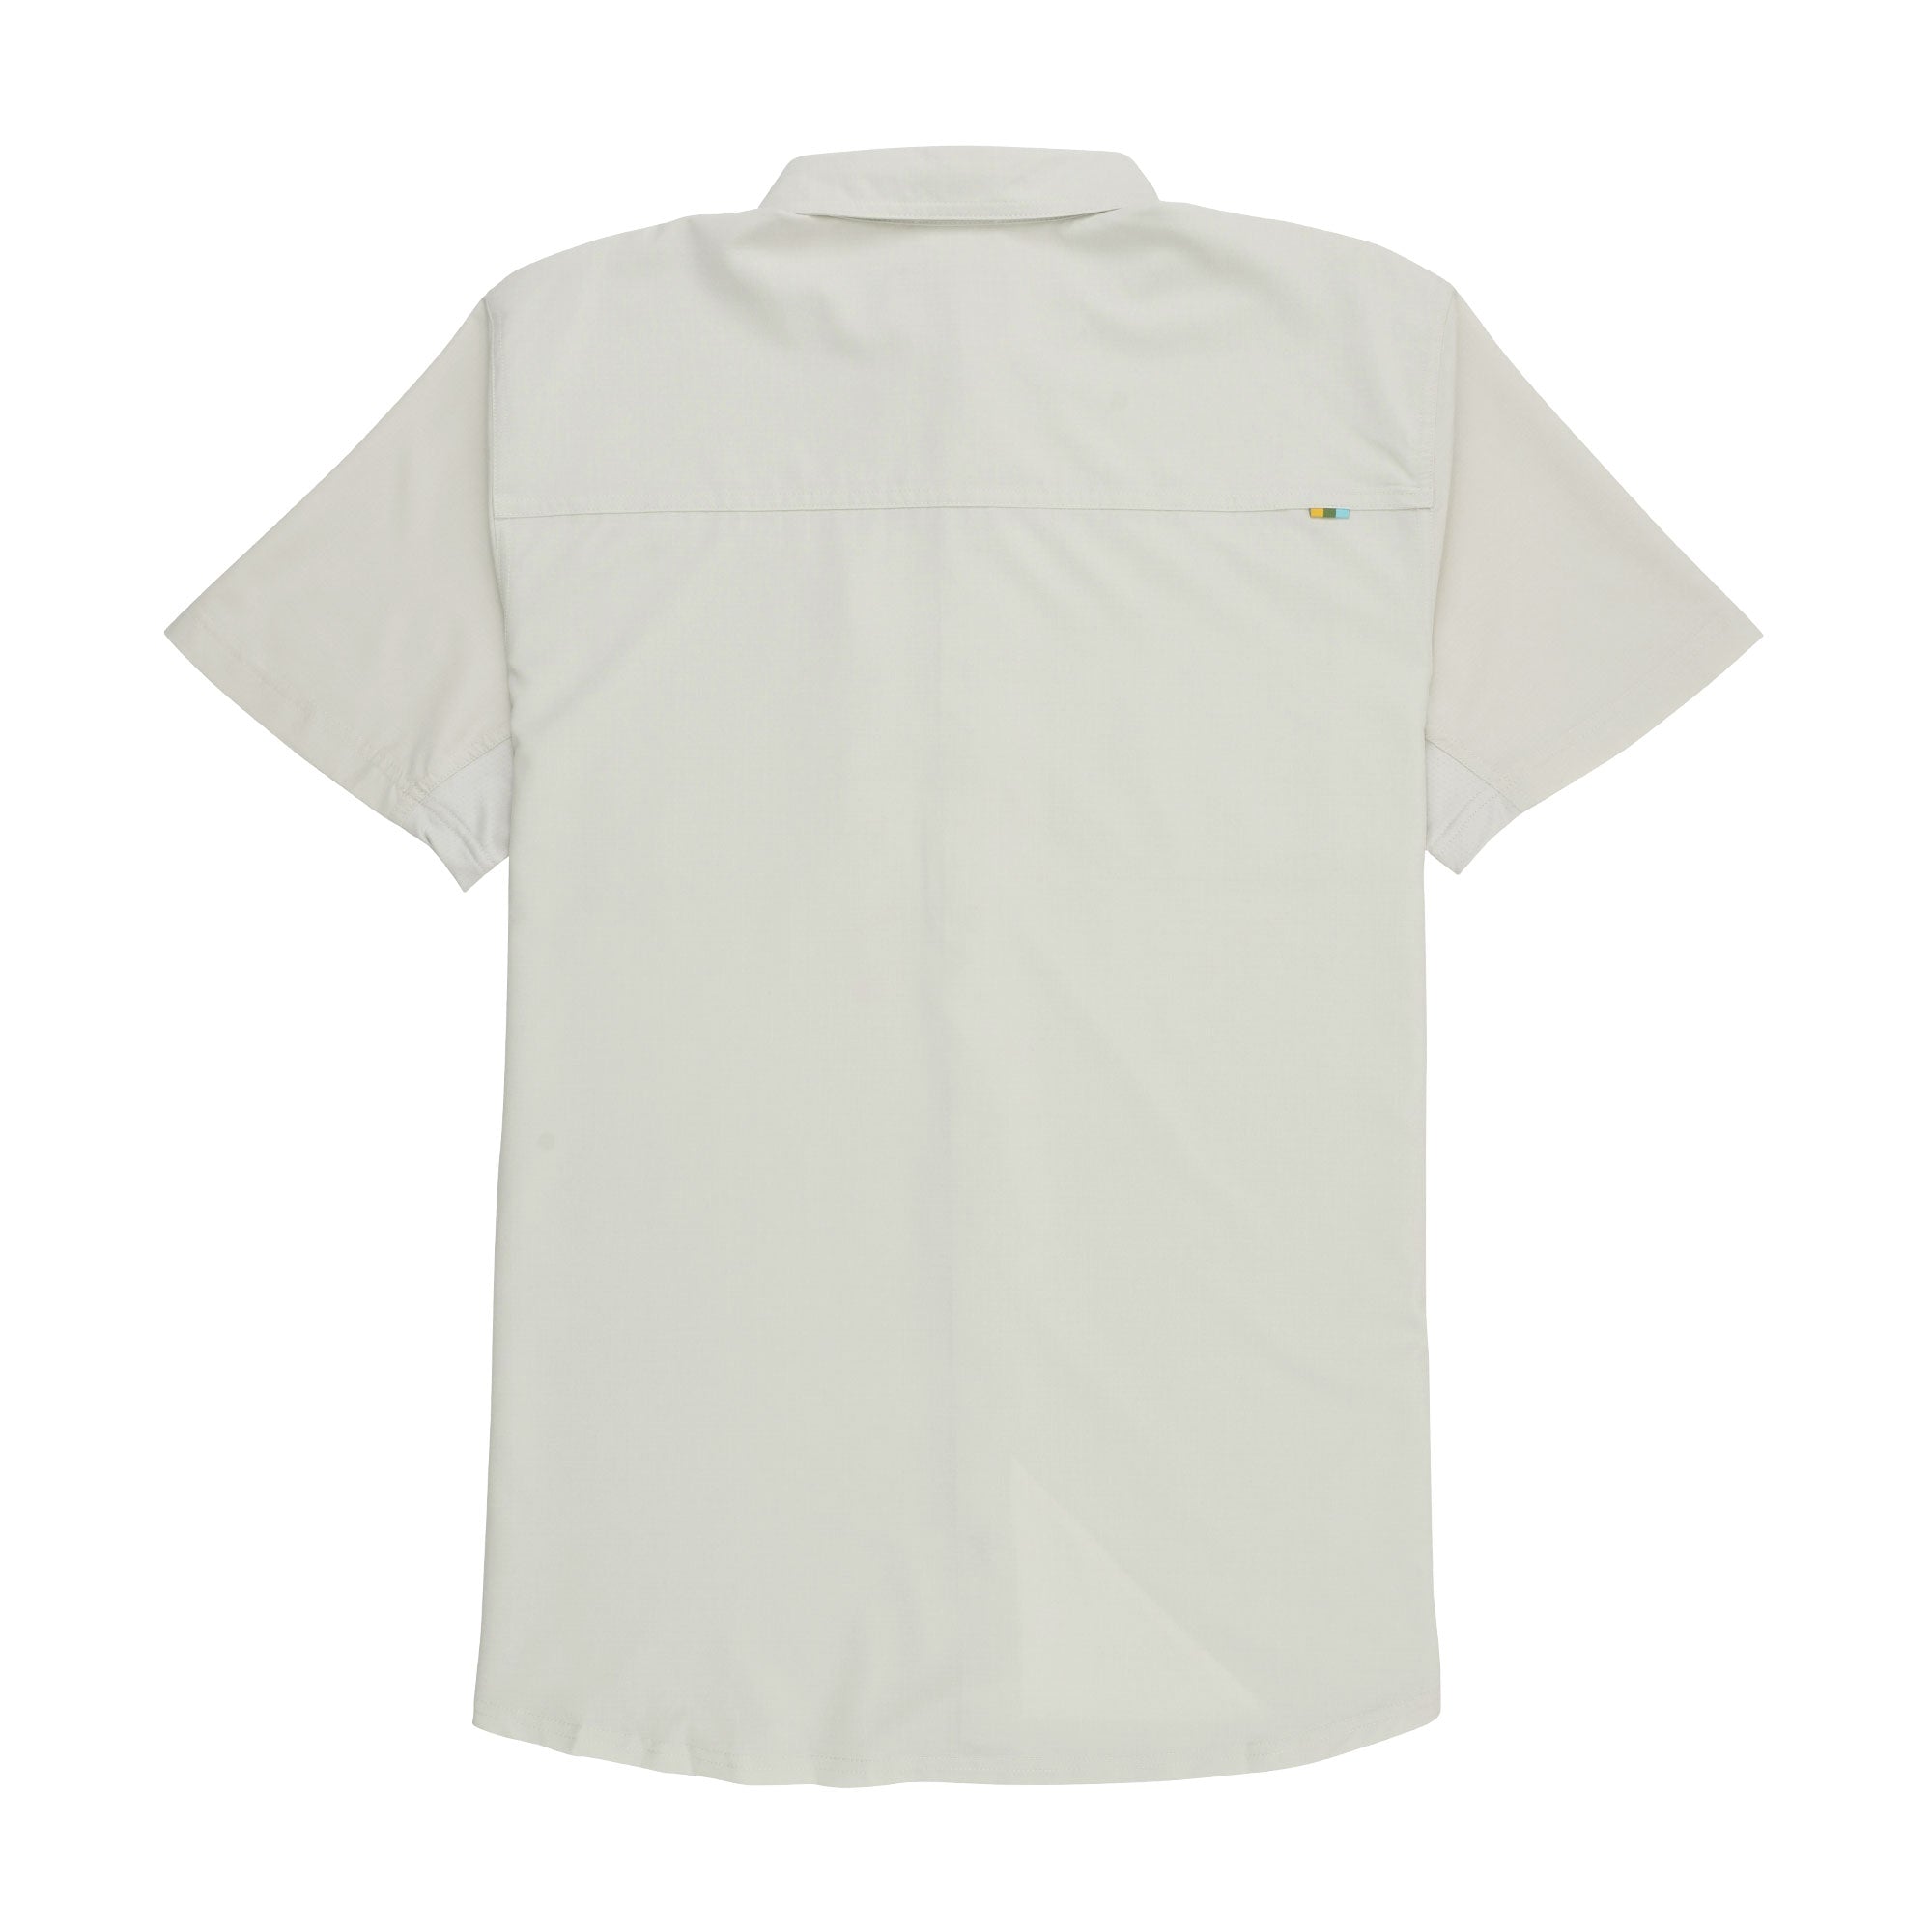 Marsh Wear Lenwood Short Sleeve Button up Shirt